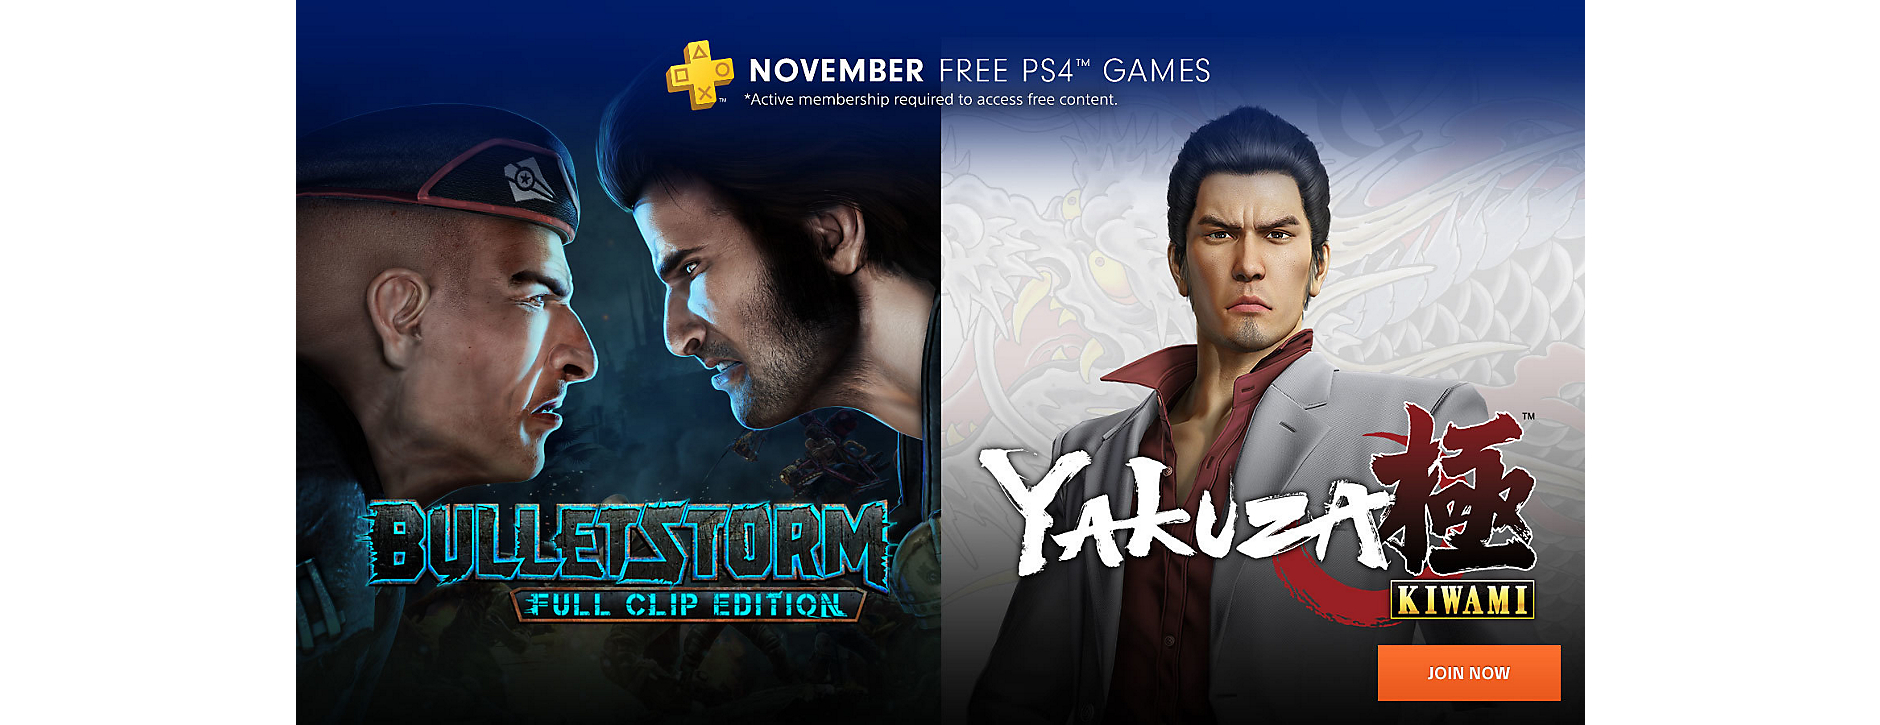 Die kostenlosen PS Plus Spiele für die PS4 im November sind bekannt